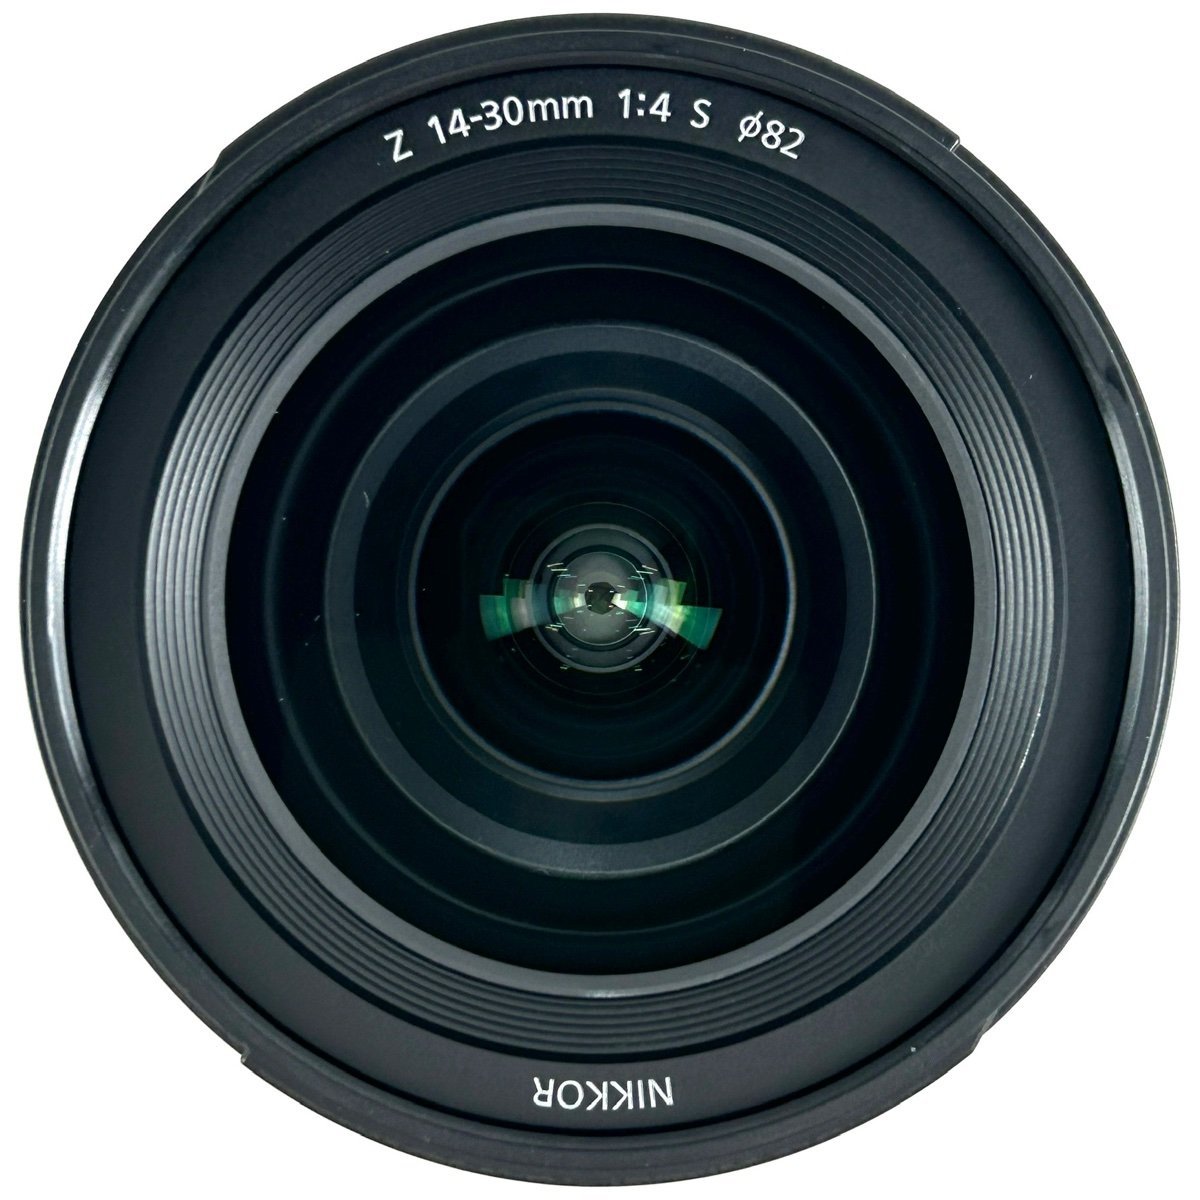 ニコン Nikon Z6 II + NIKKOR Z 14-30mm F4 S デジタル ミラーレス 一眼カメラ 【中古】_バイセル 31052_6